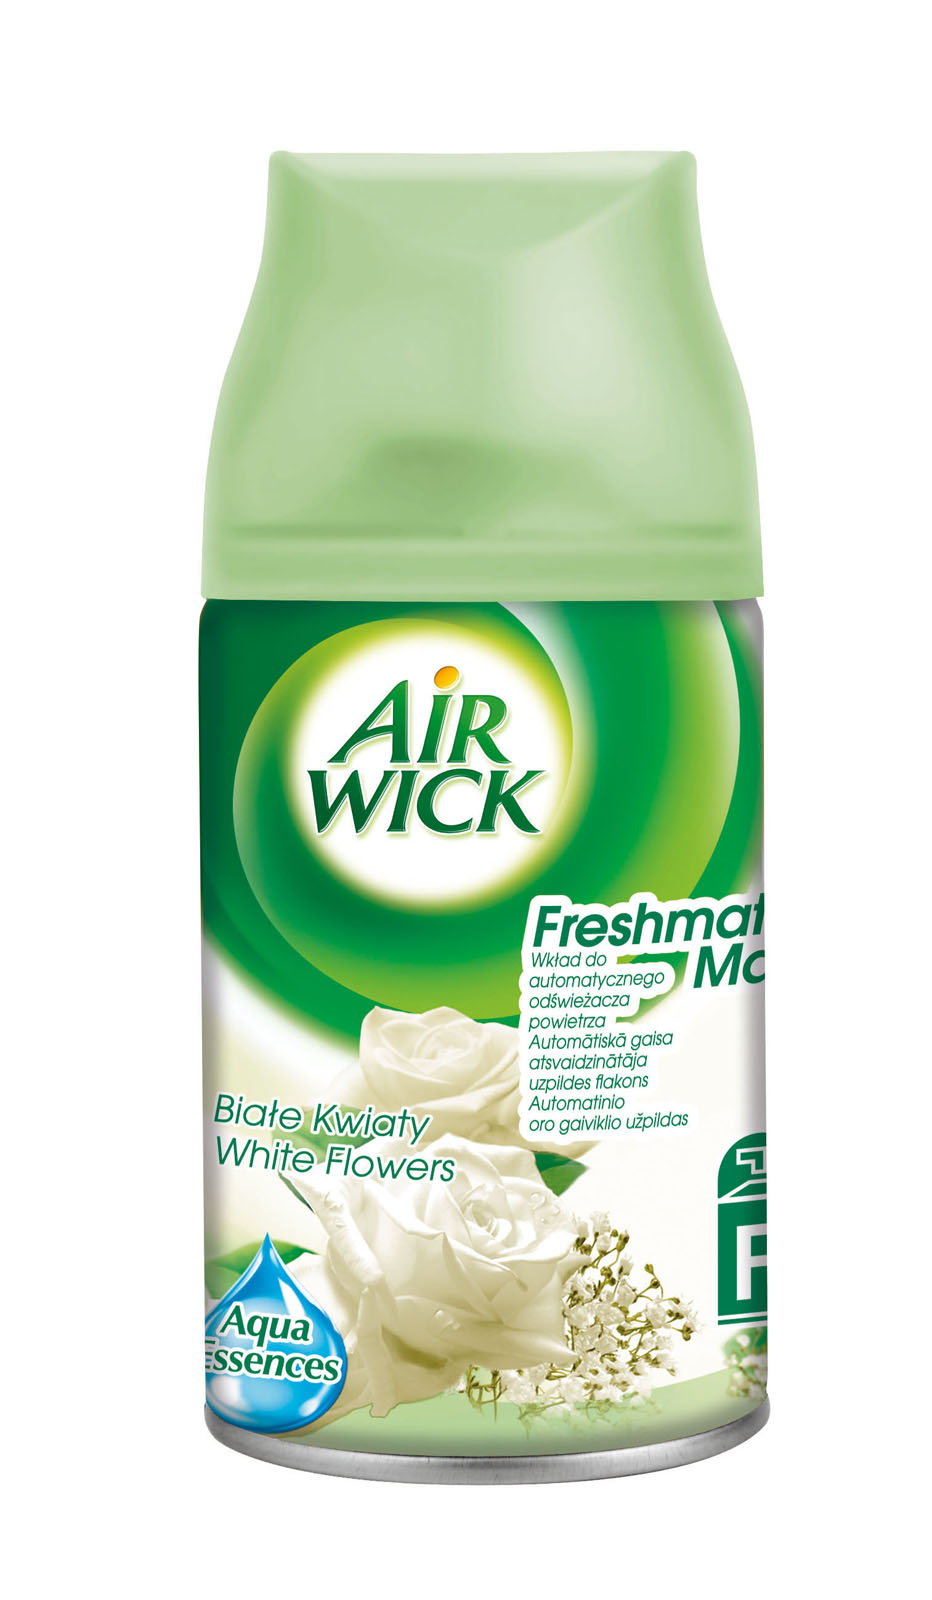 Air Wick Freshmatic, Białe Kwiaty, samouwalniający odświeżacz powietrza, zapas, 250ml